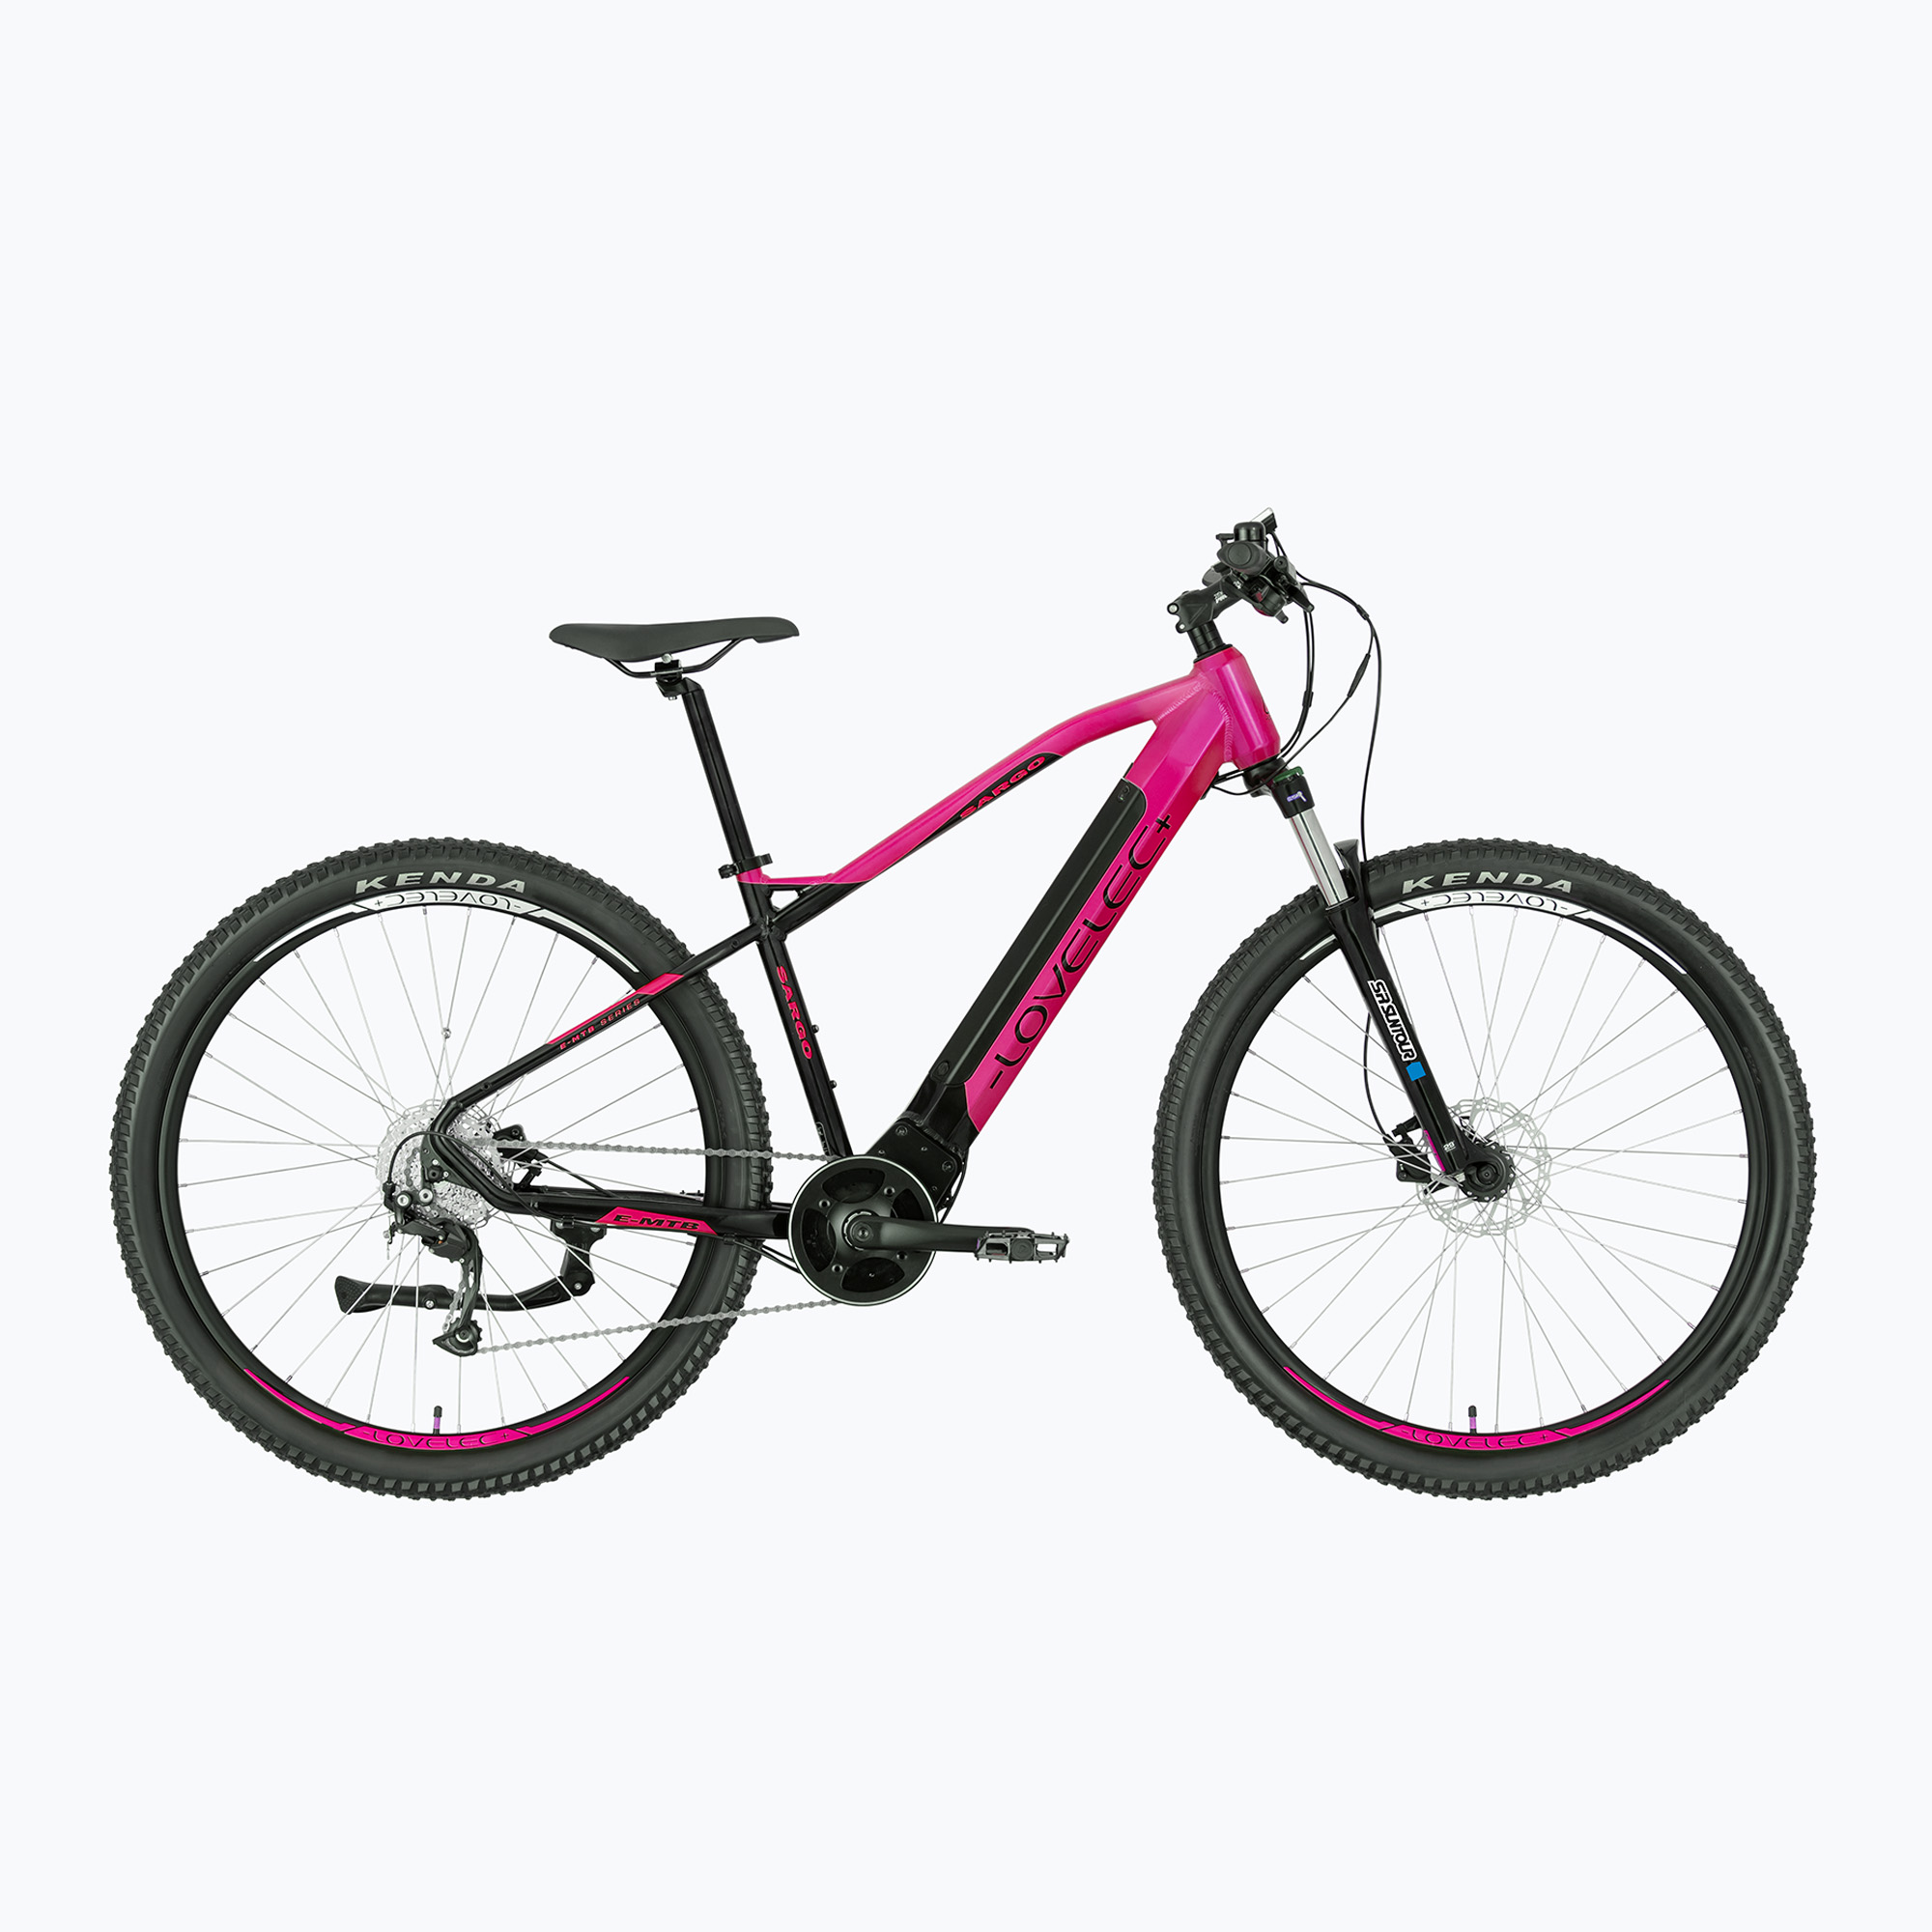 LOVELEC електрически велосипед Sargo 20Ah розов/черен B400342